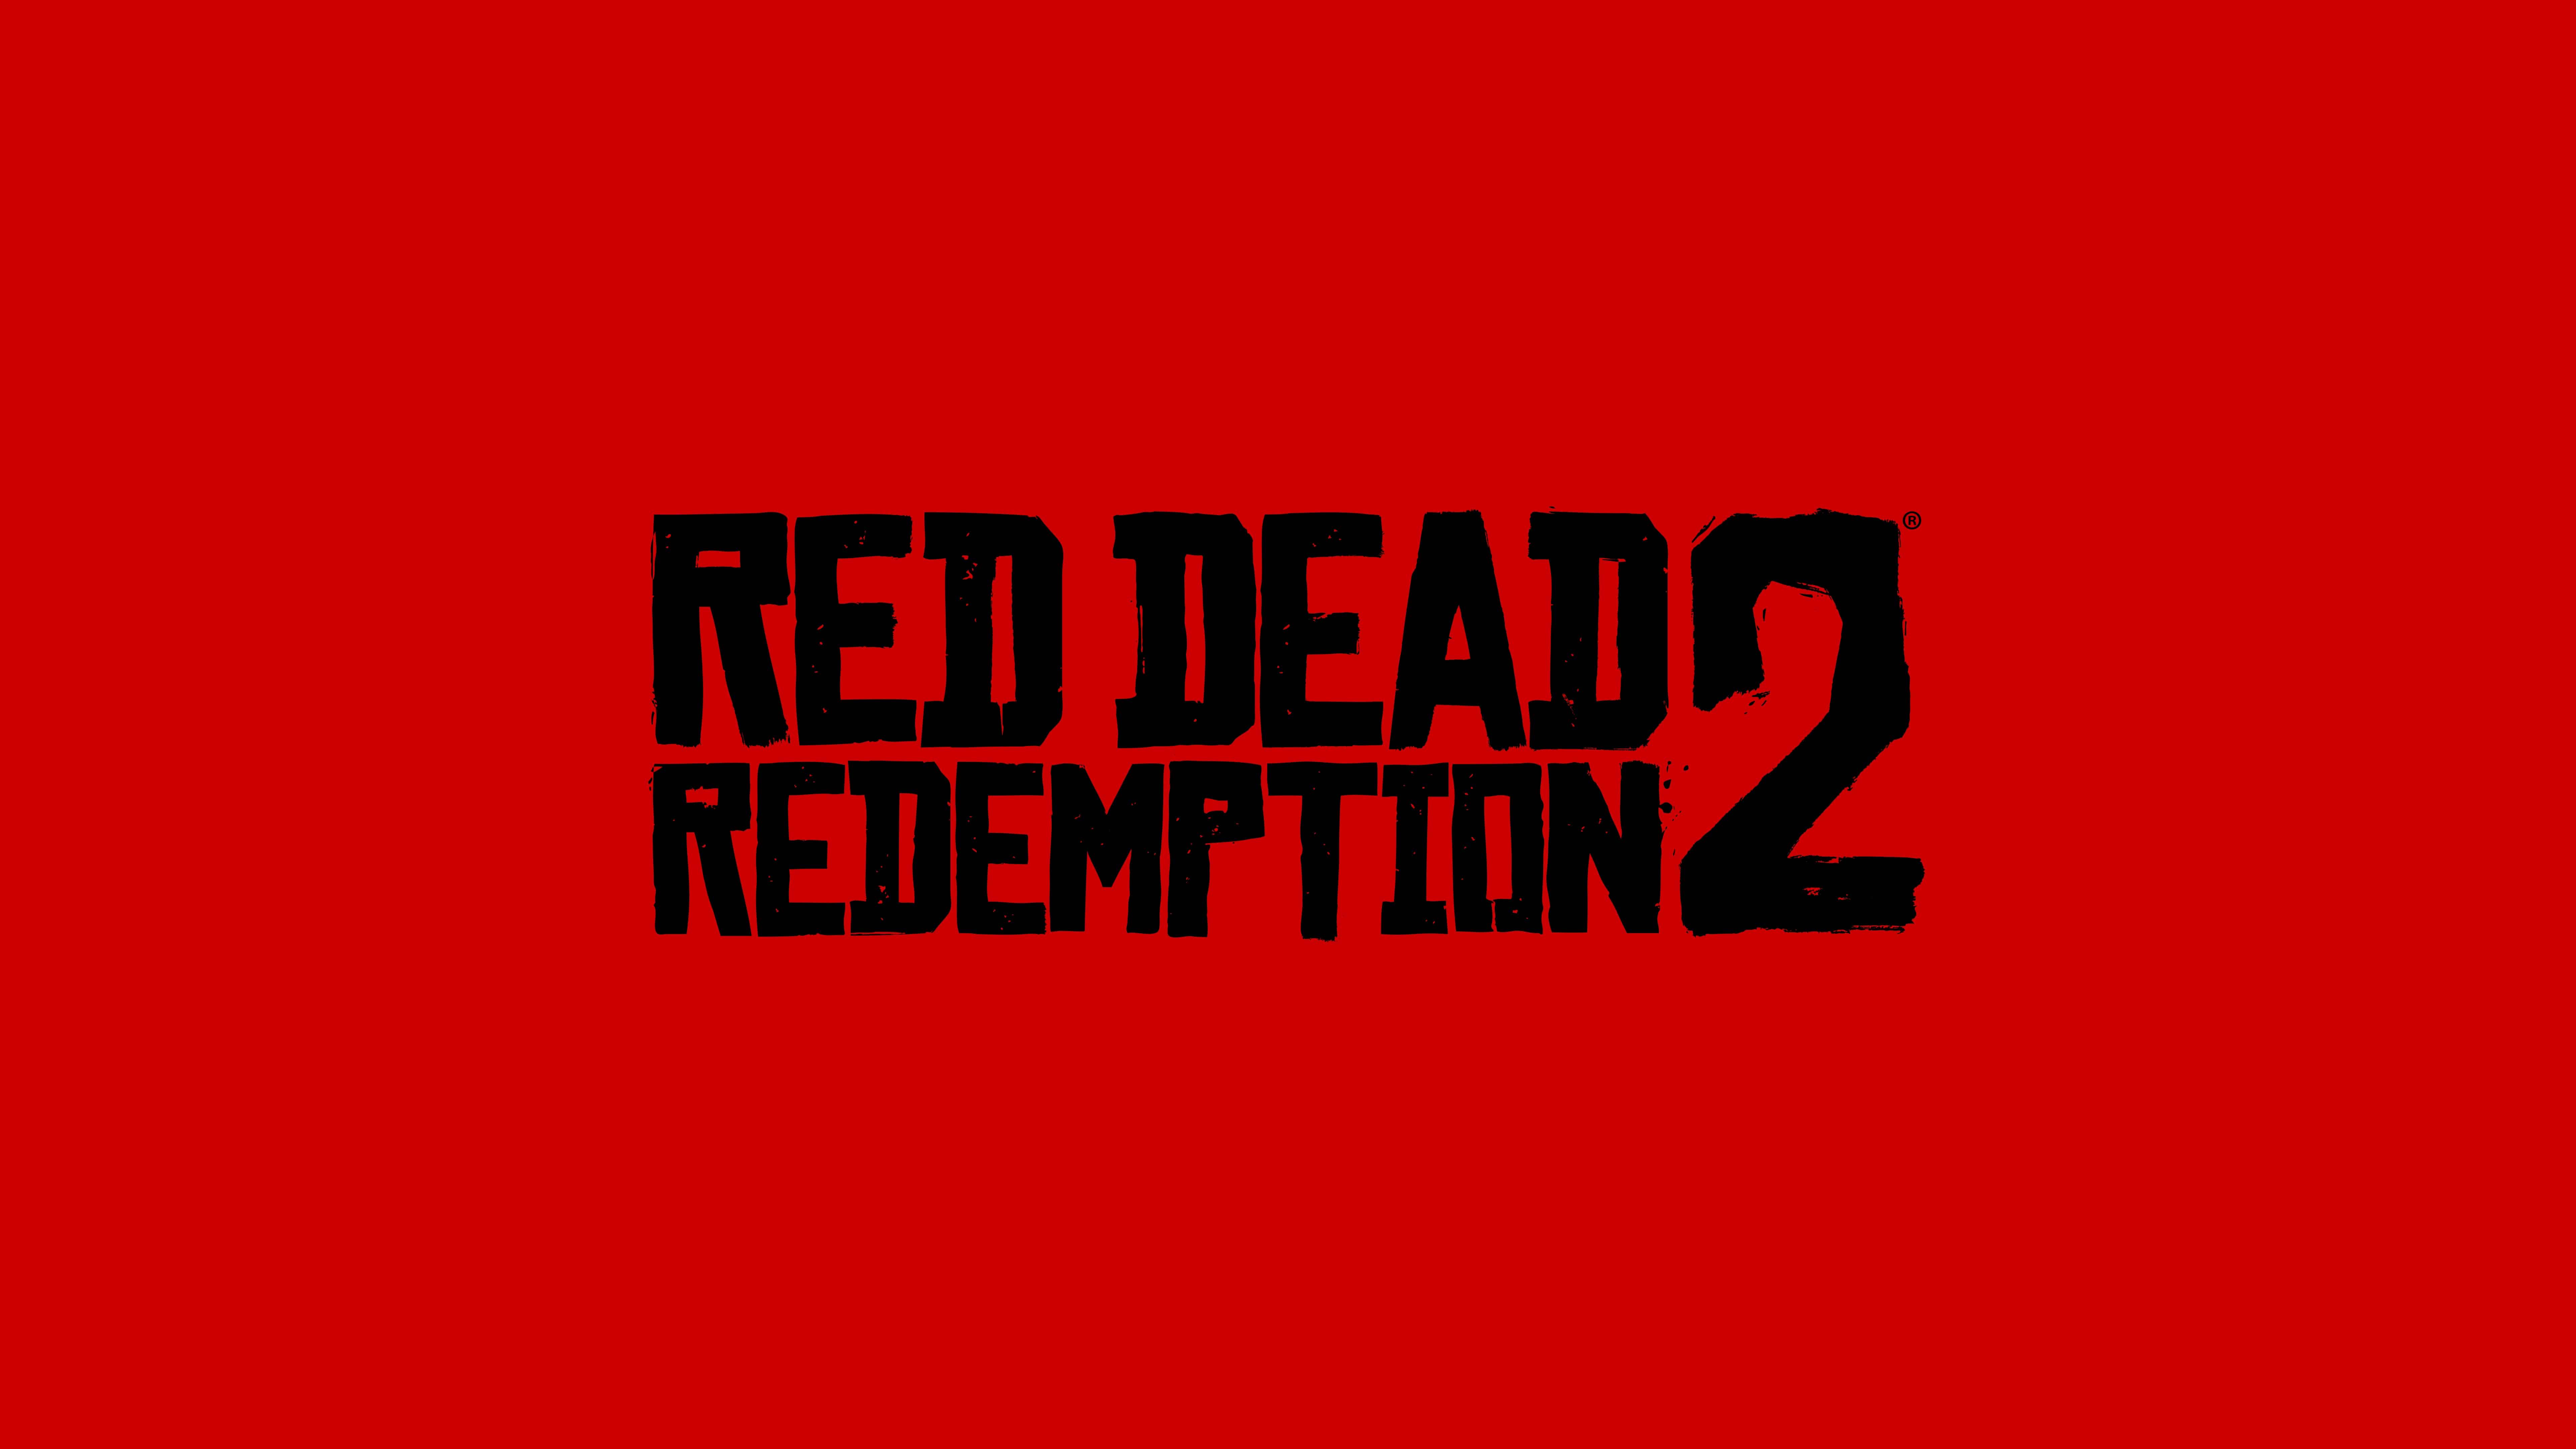 8K Logo - Red Dead Redemption Logo UHD 8K Wallpaper | Pixelz